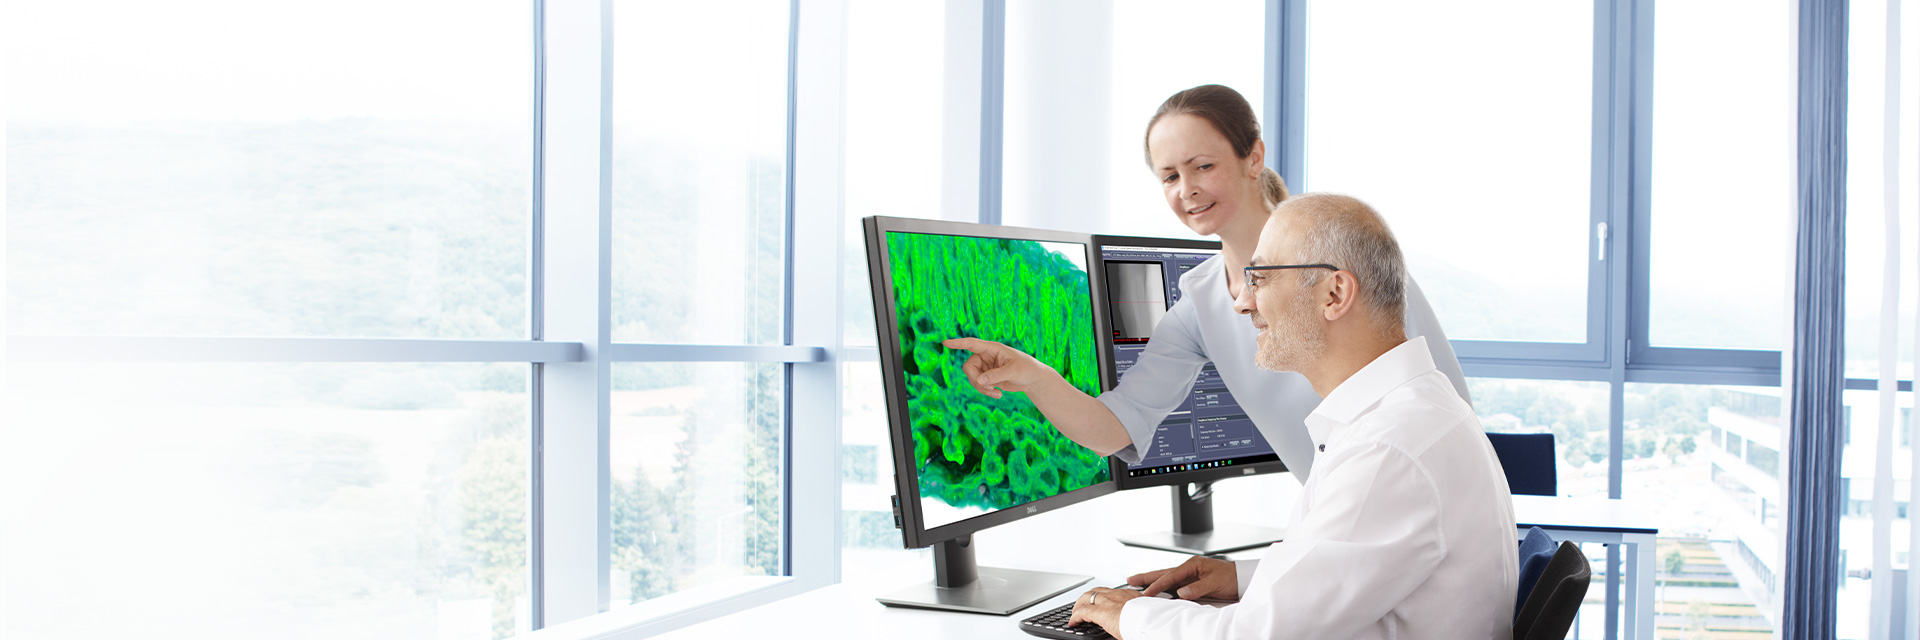 X線顕微鏡ソフトウェア - 高分解能3D X線イメージング用ソフトウェア